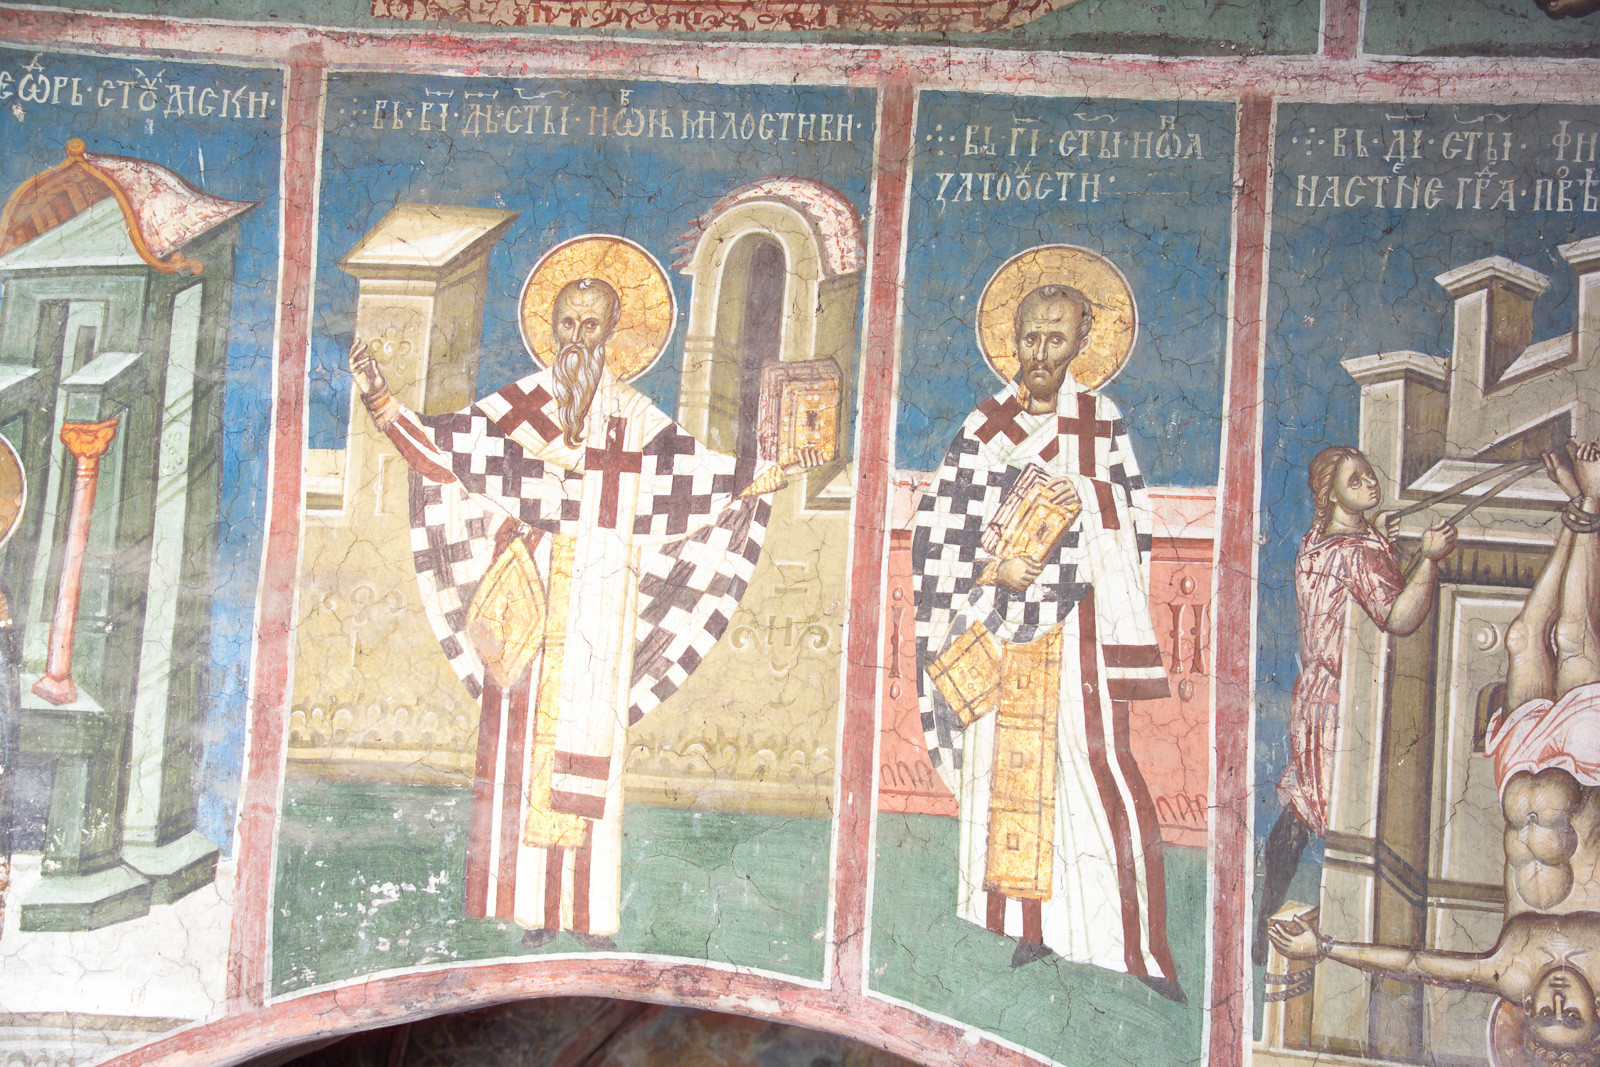 7II-21,22 November 12 & 13 - St. John Almsgiver and St. John Chrysostom (figures)